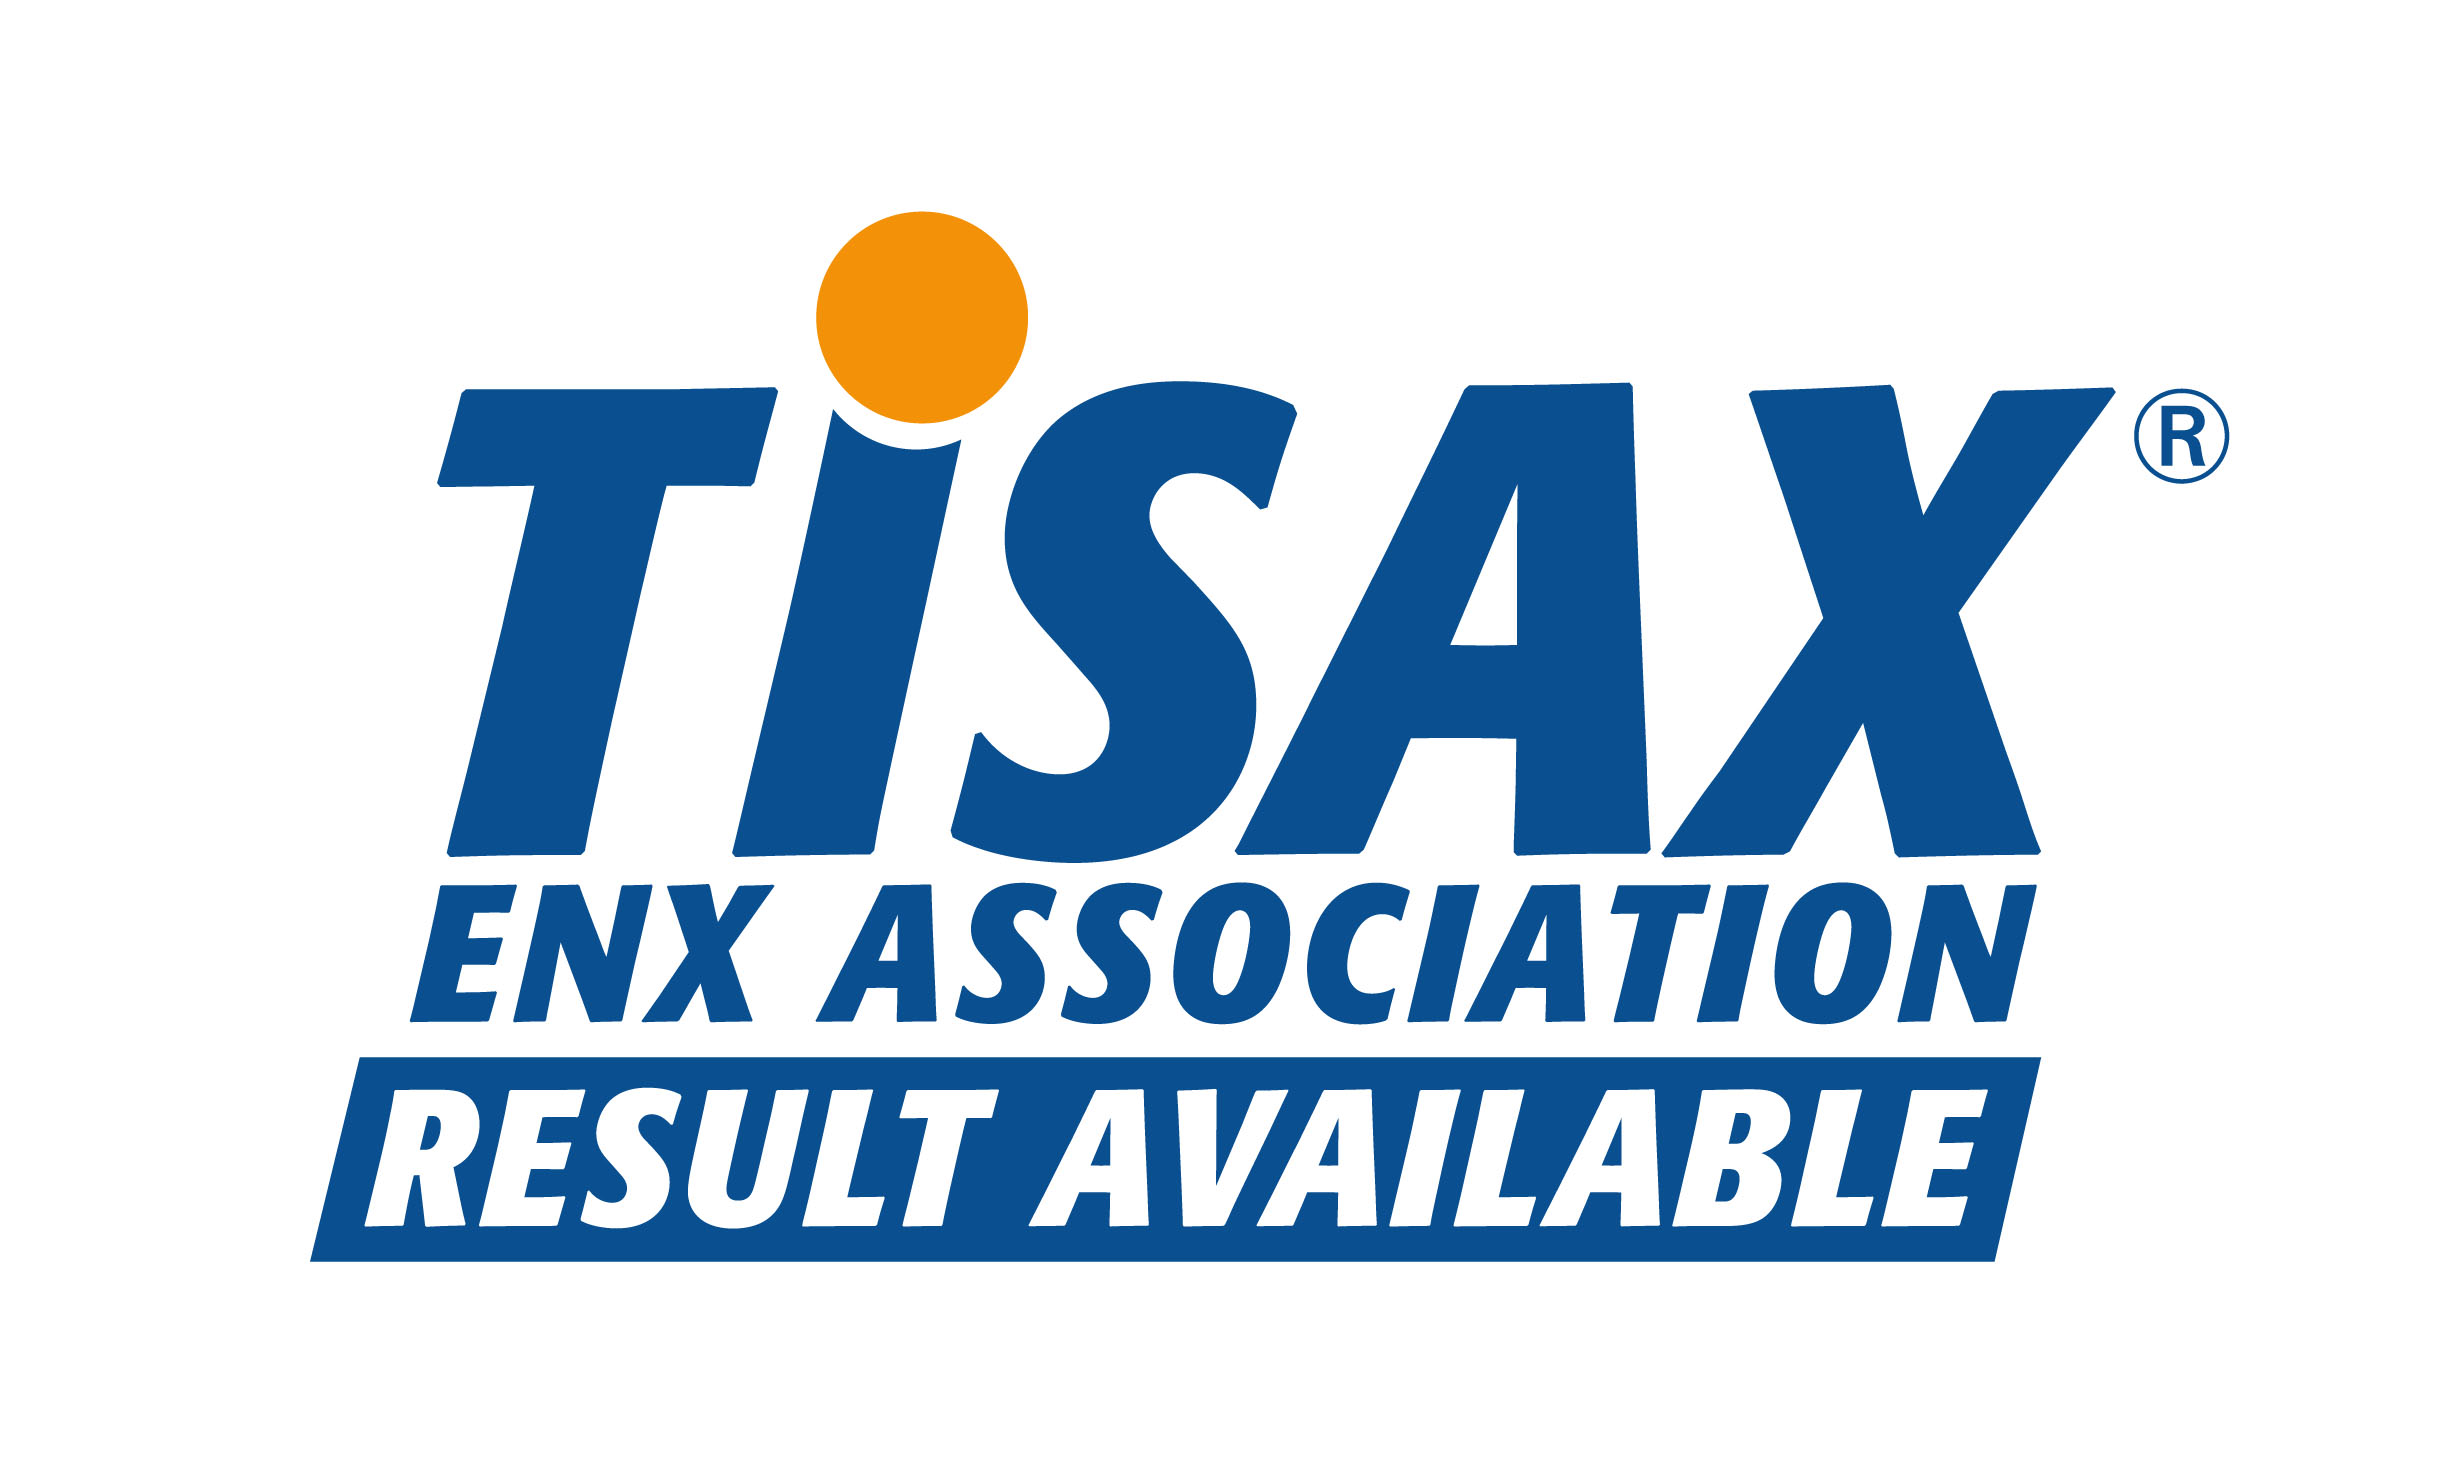 Logo TISAX